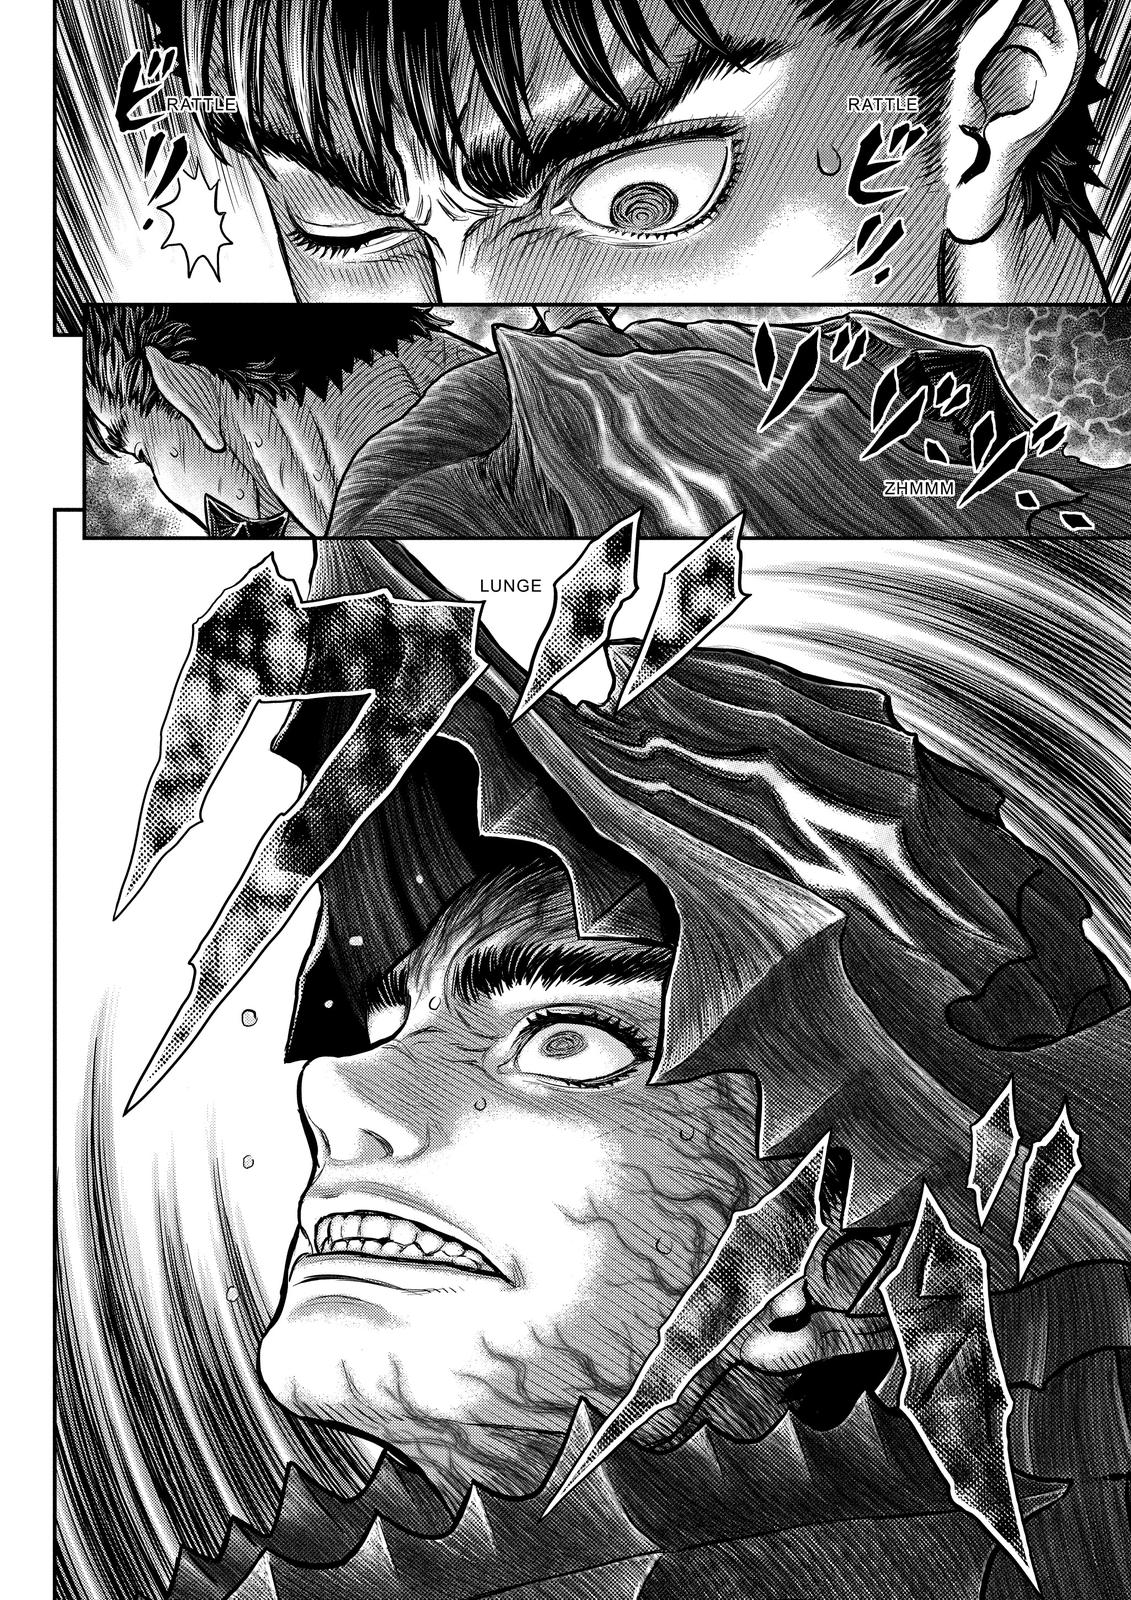 Berserk Manga Chapter 361 image 19